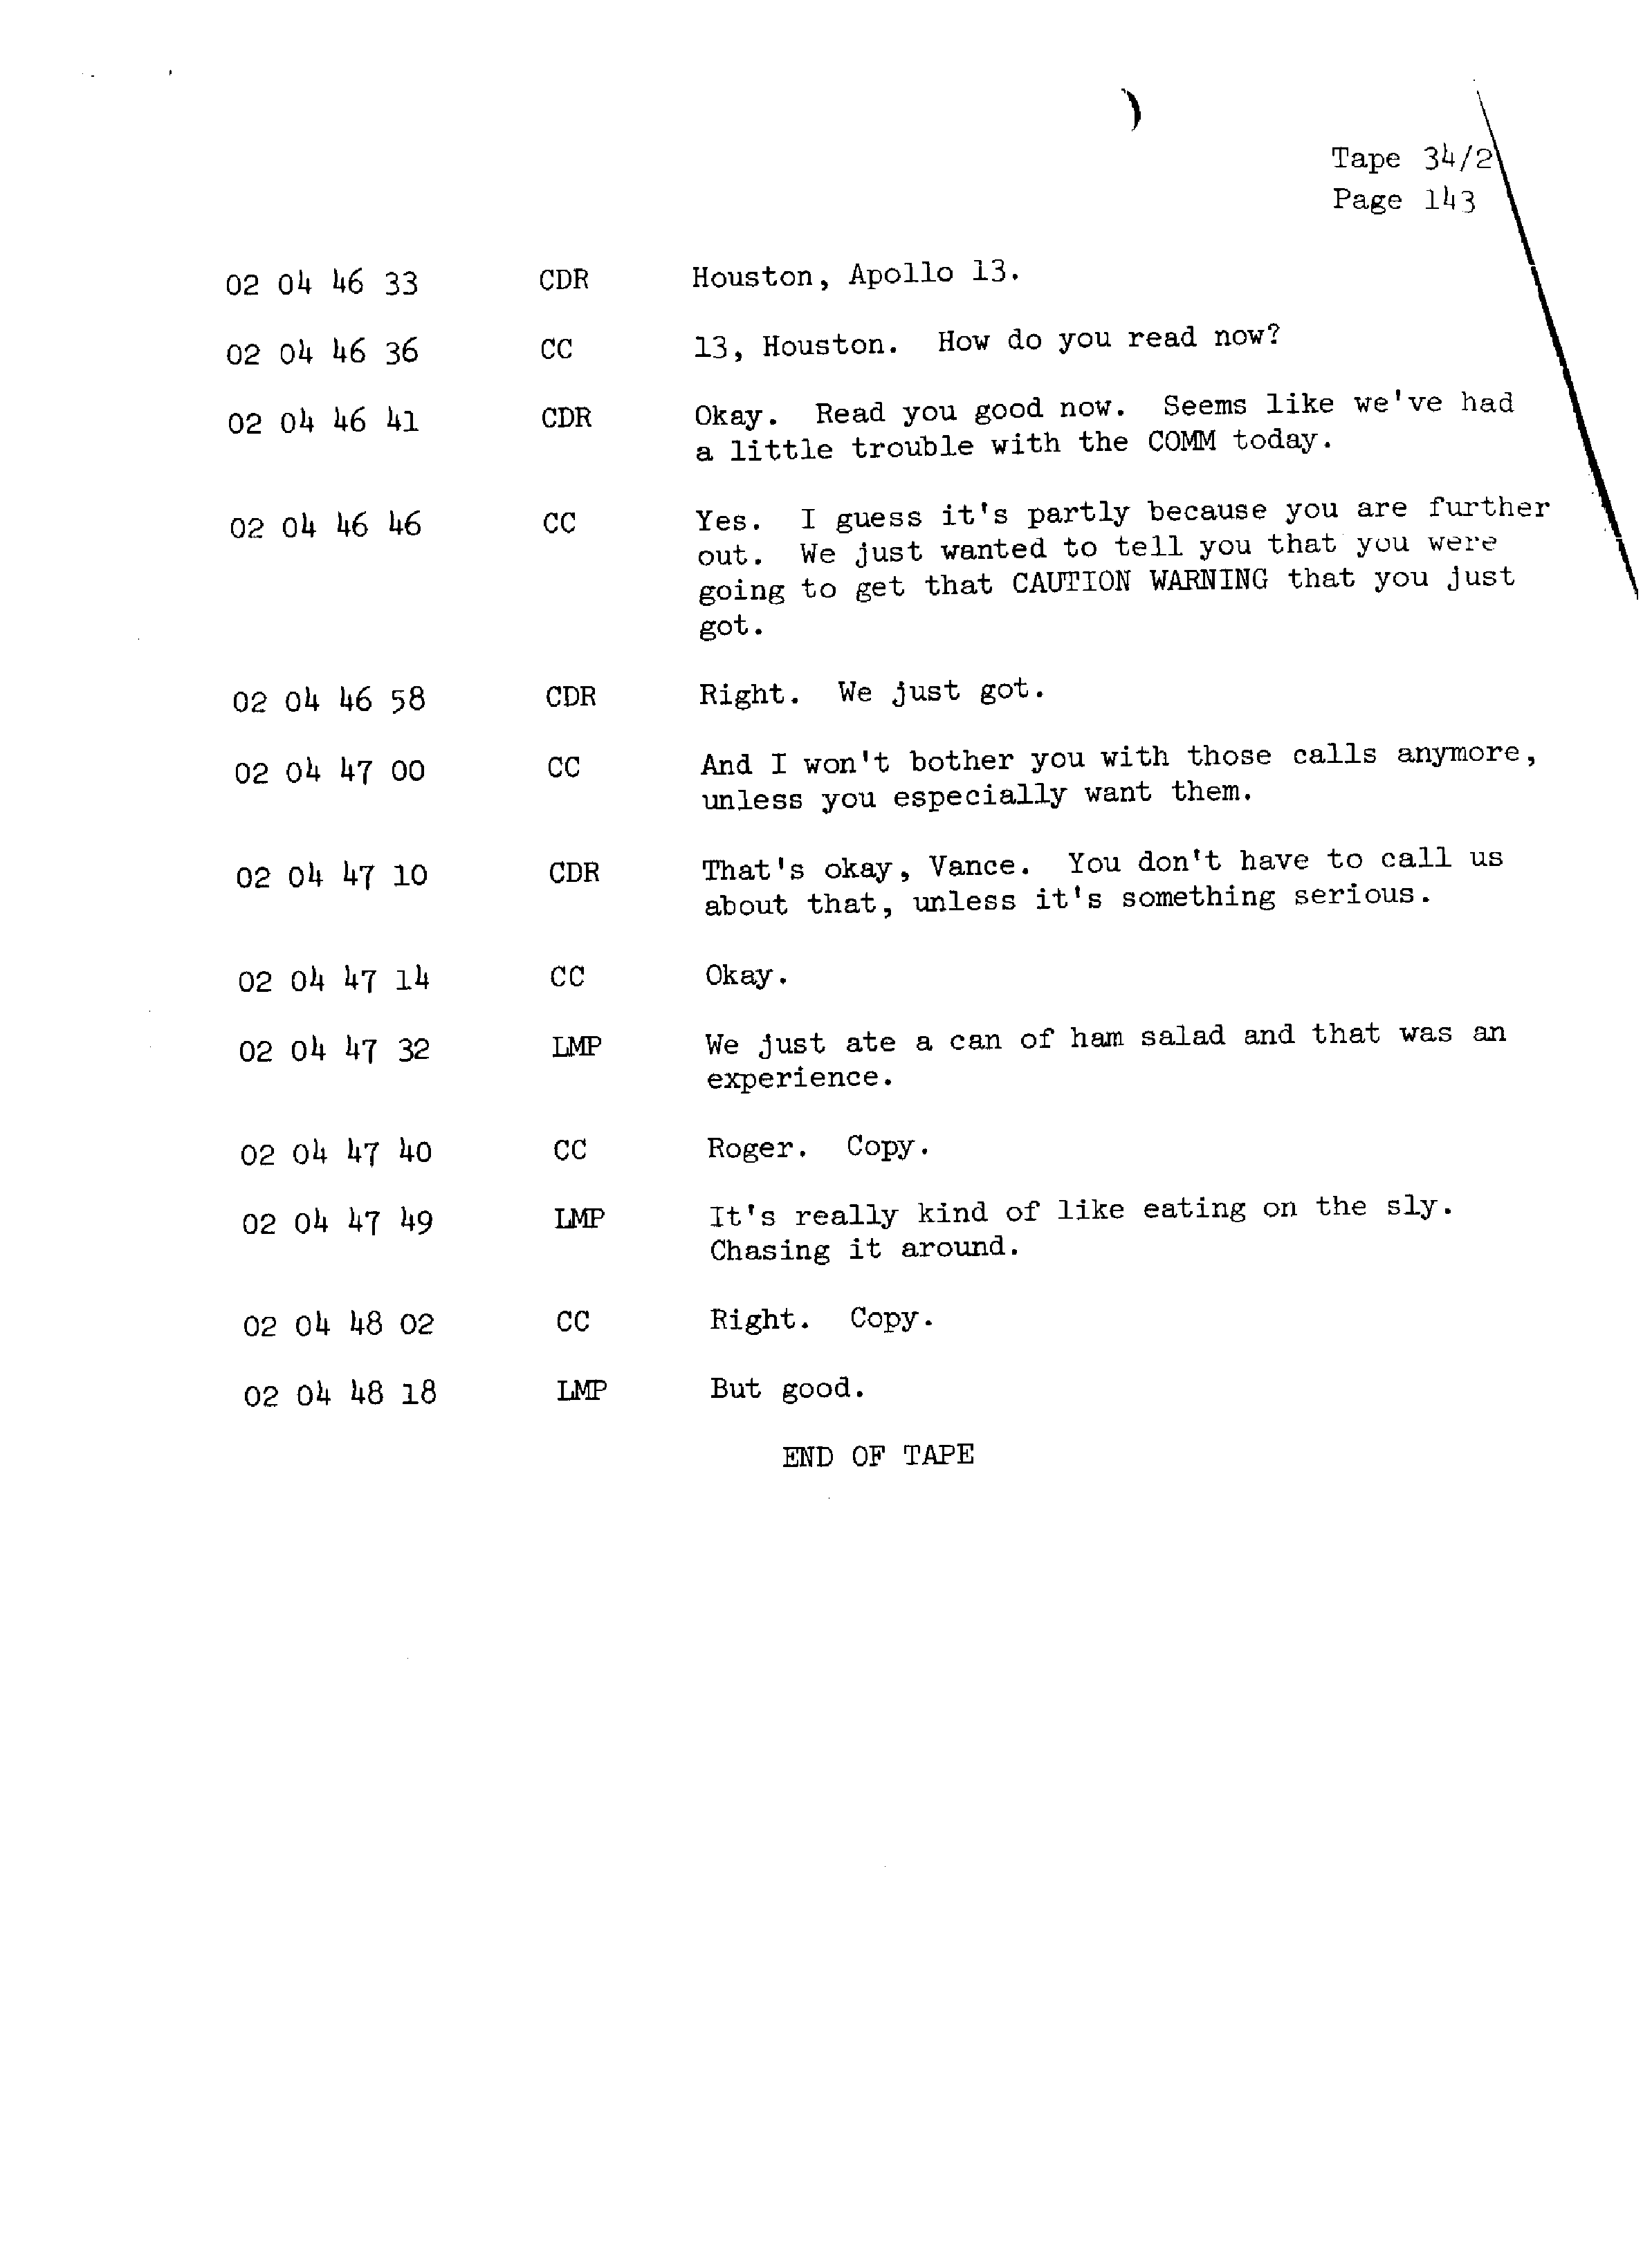 Page 150 of Apollo 13’s original transcript